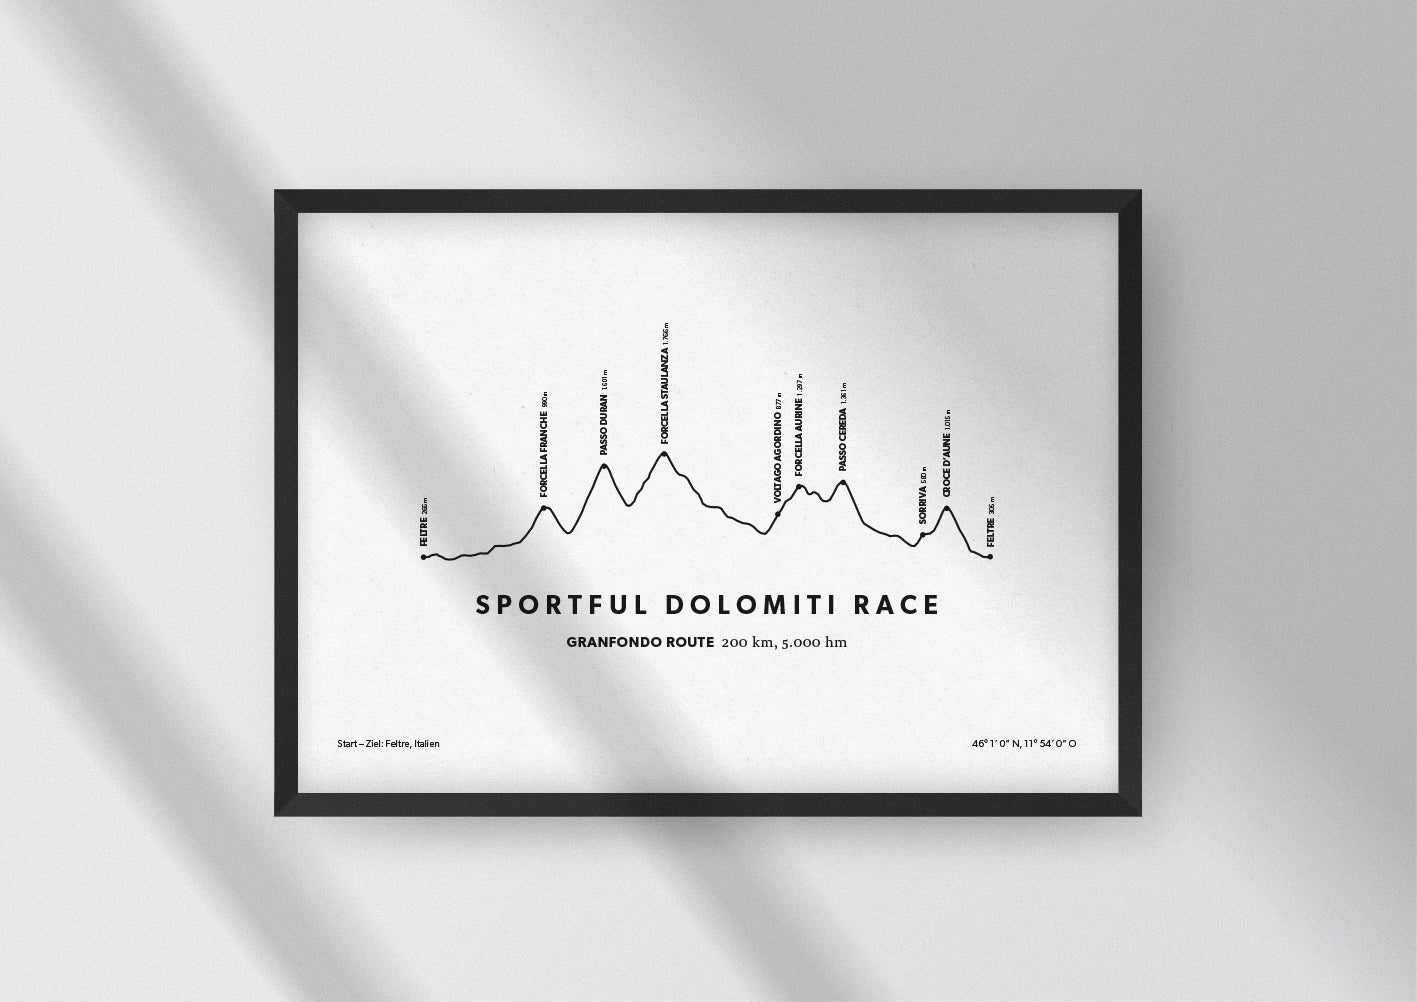 Minimalistische Illustration des Sportful Dolomiti Race, einem der schönsten Rad-Marathons in den Alpen, als stilvoller Einrichtungsgegenstand für Zuhause. Granfondo Route